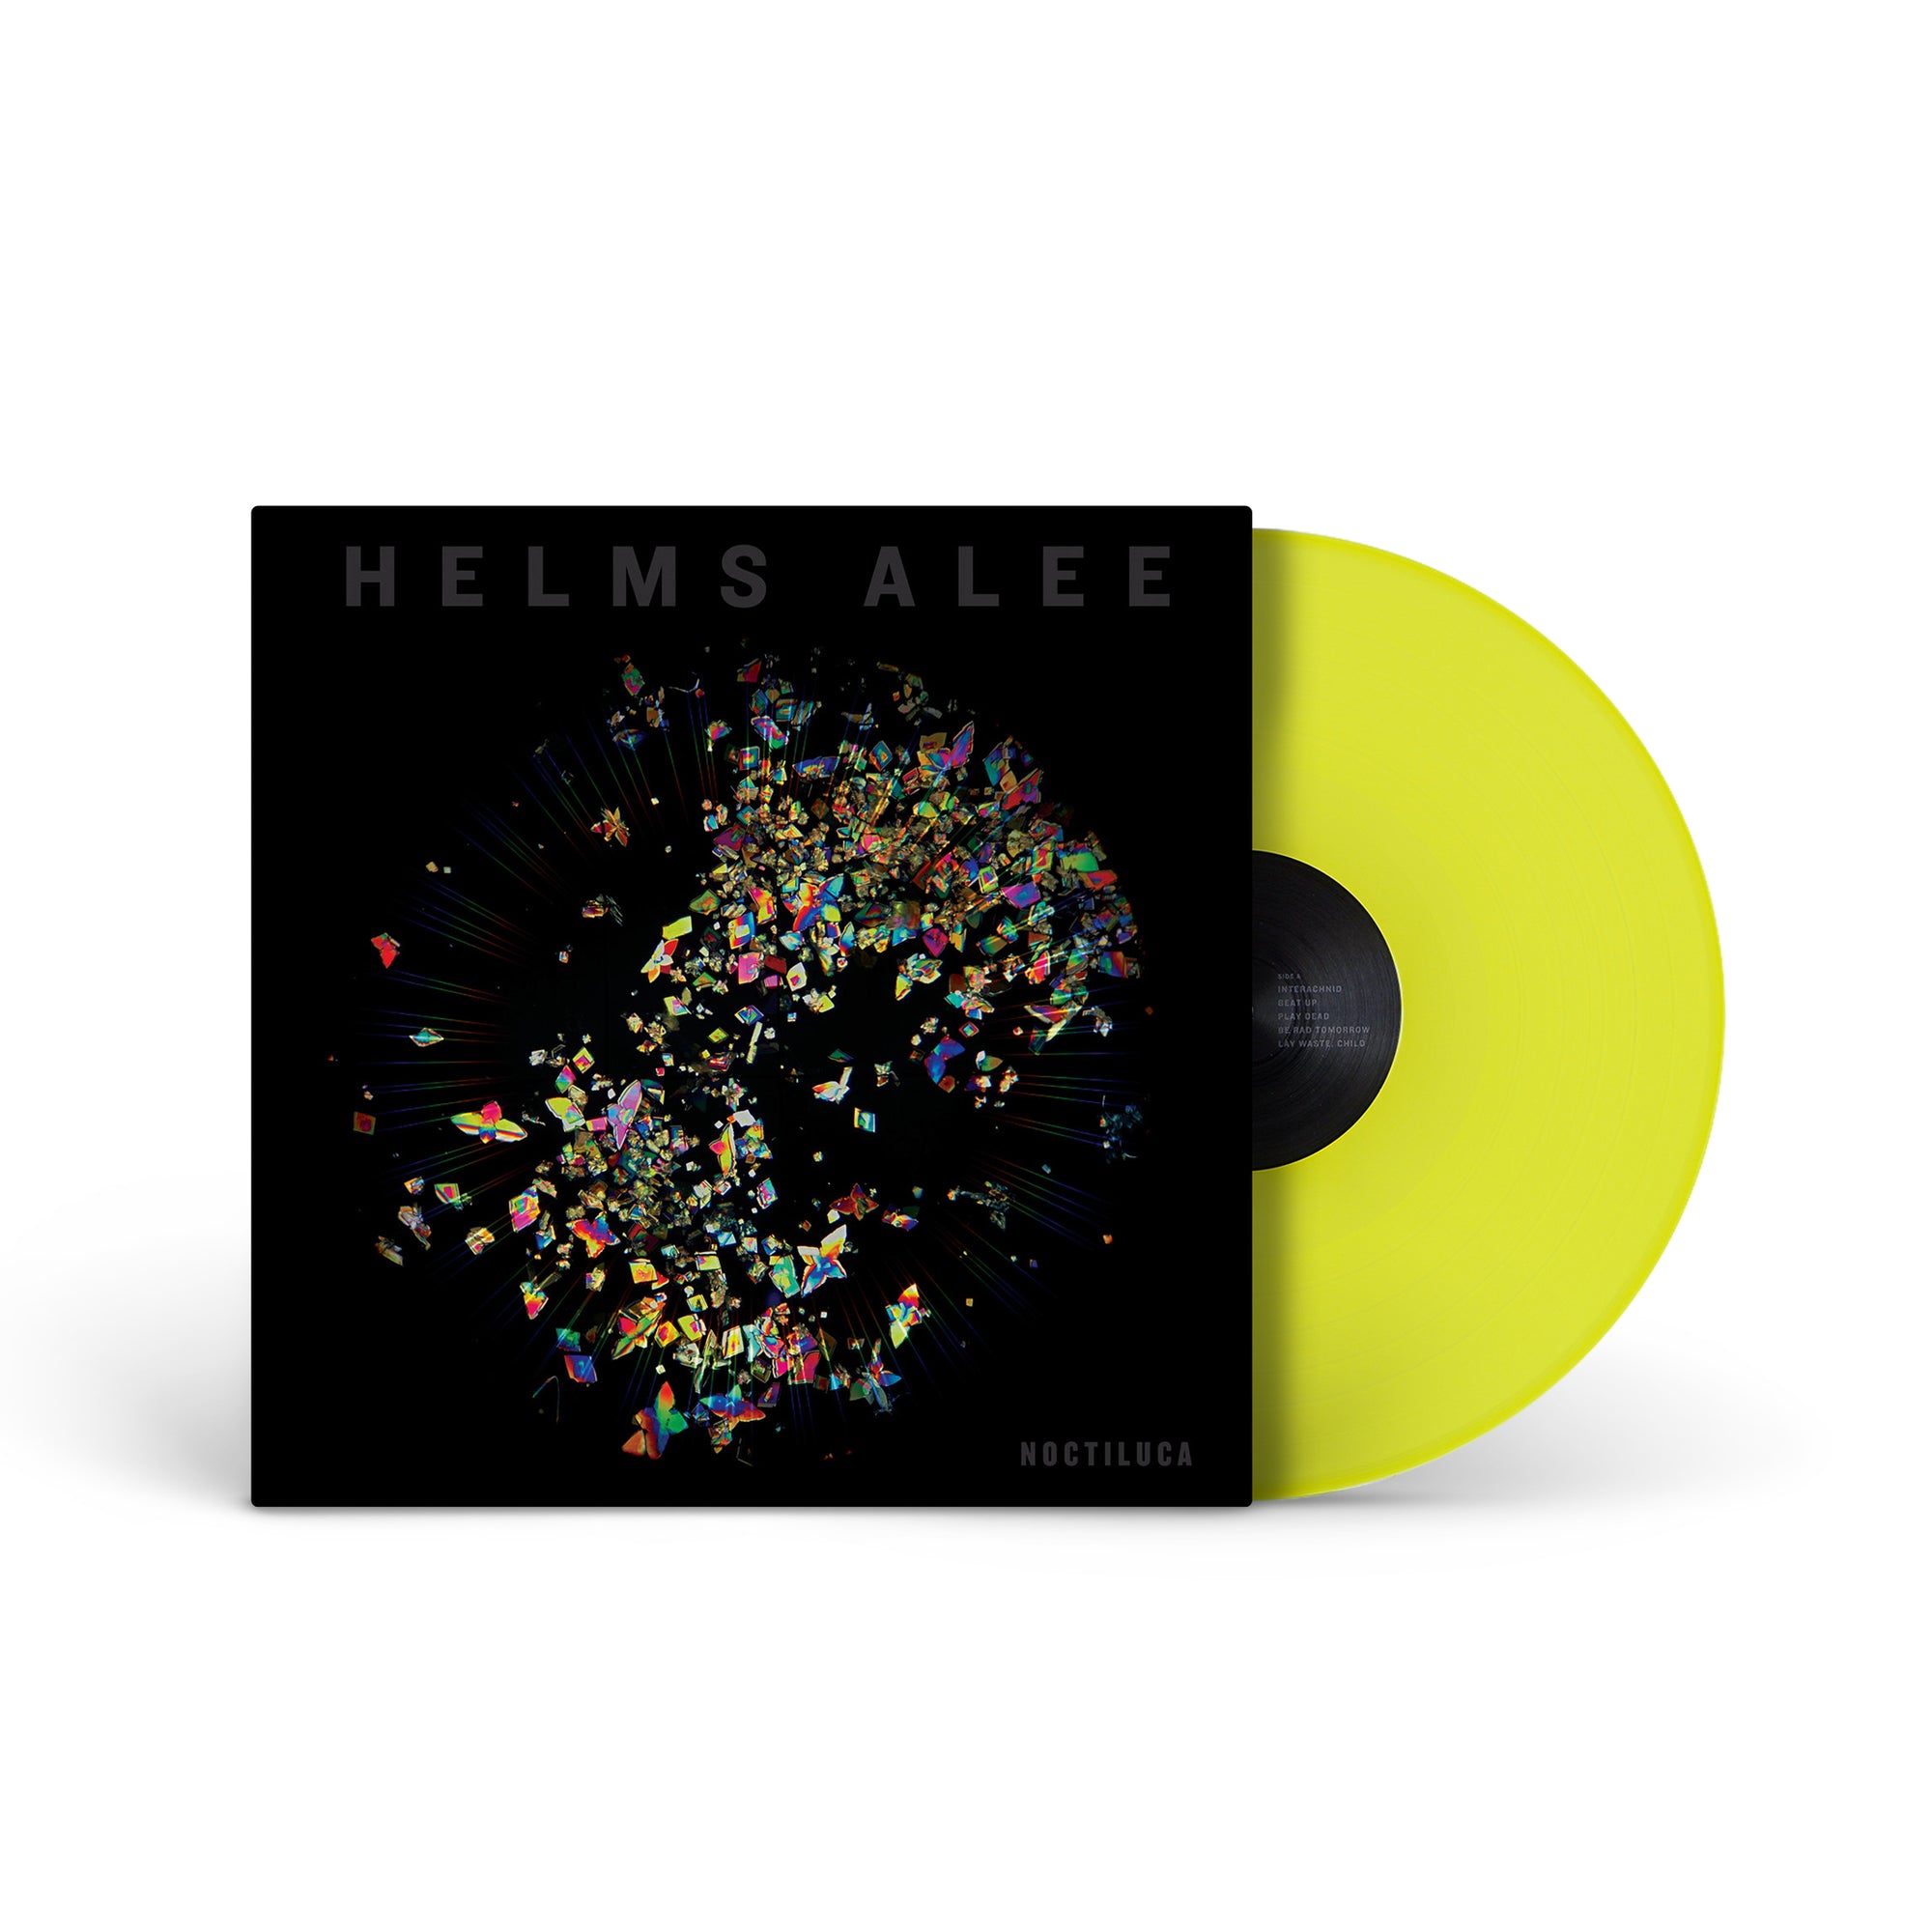 HELMS ALEE "Noctiluca" LP